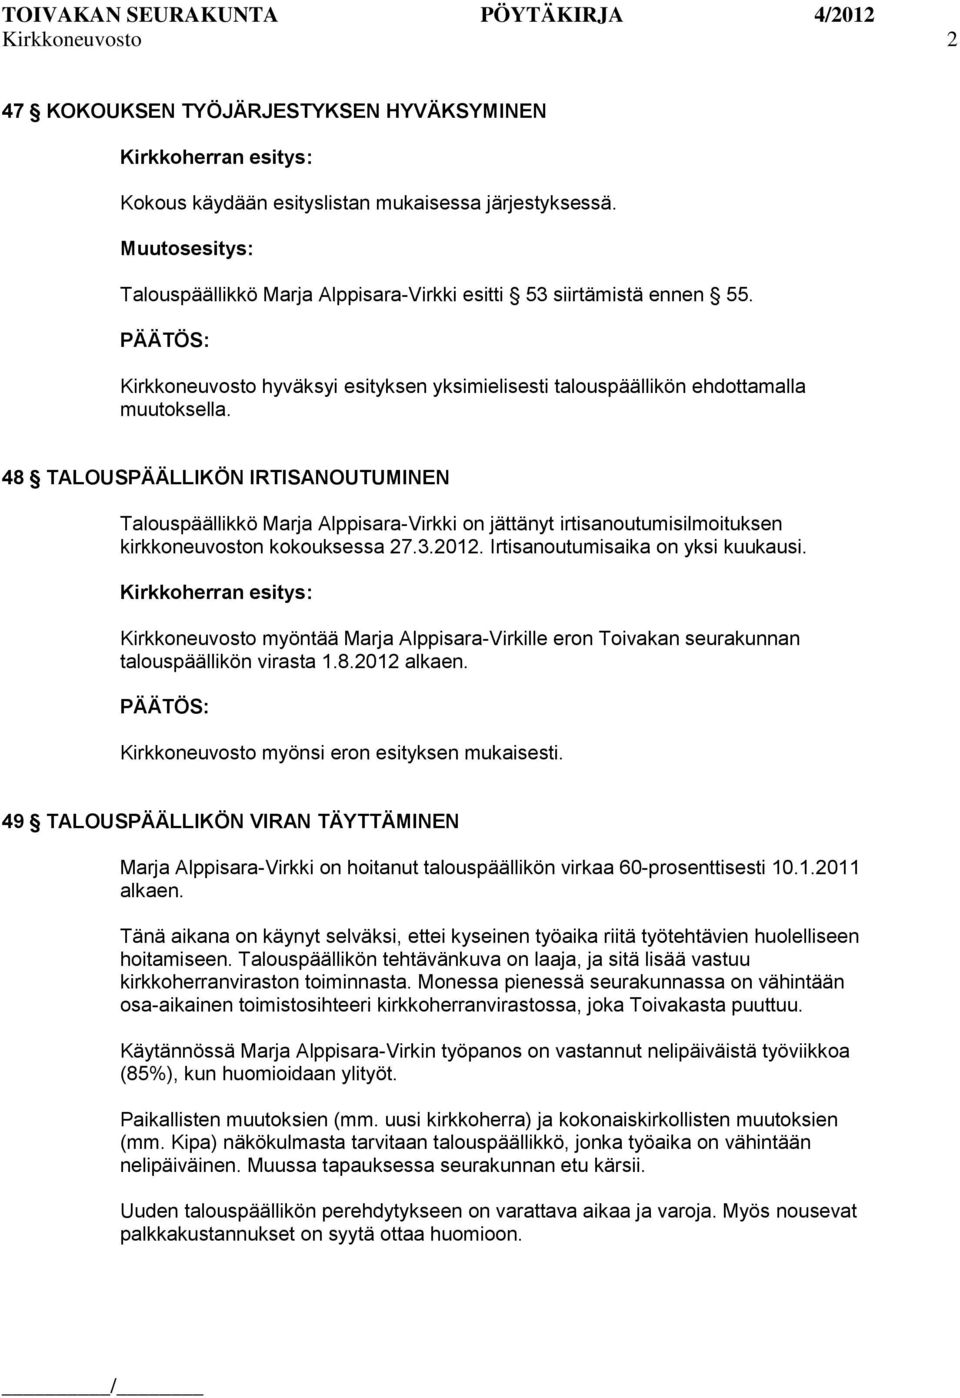 48 TALOUSPÄÄLLIKÖN IRTISANOUTUMINEN Talouspäällikkö Marja Alppisara-Virkki on jättänyt irtisanoutumisilmoituksen kirkkoneuvoston kokouksessa 27.3.2012. Irtisanoutumisaika on yksi kuukausi.